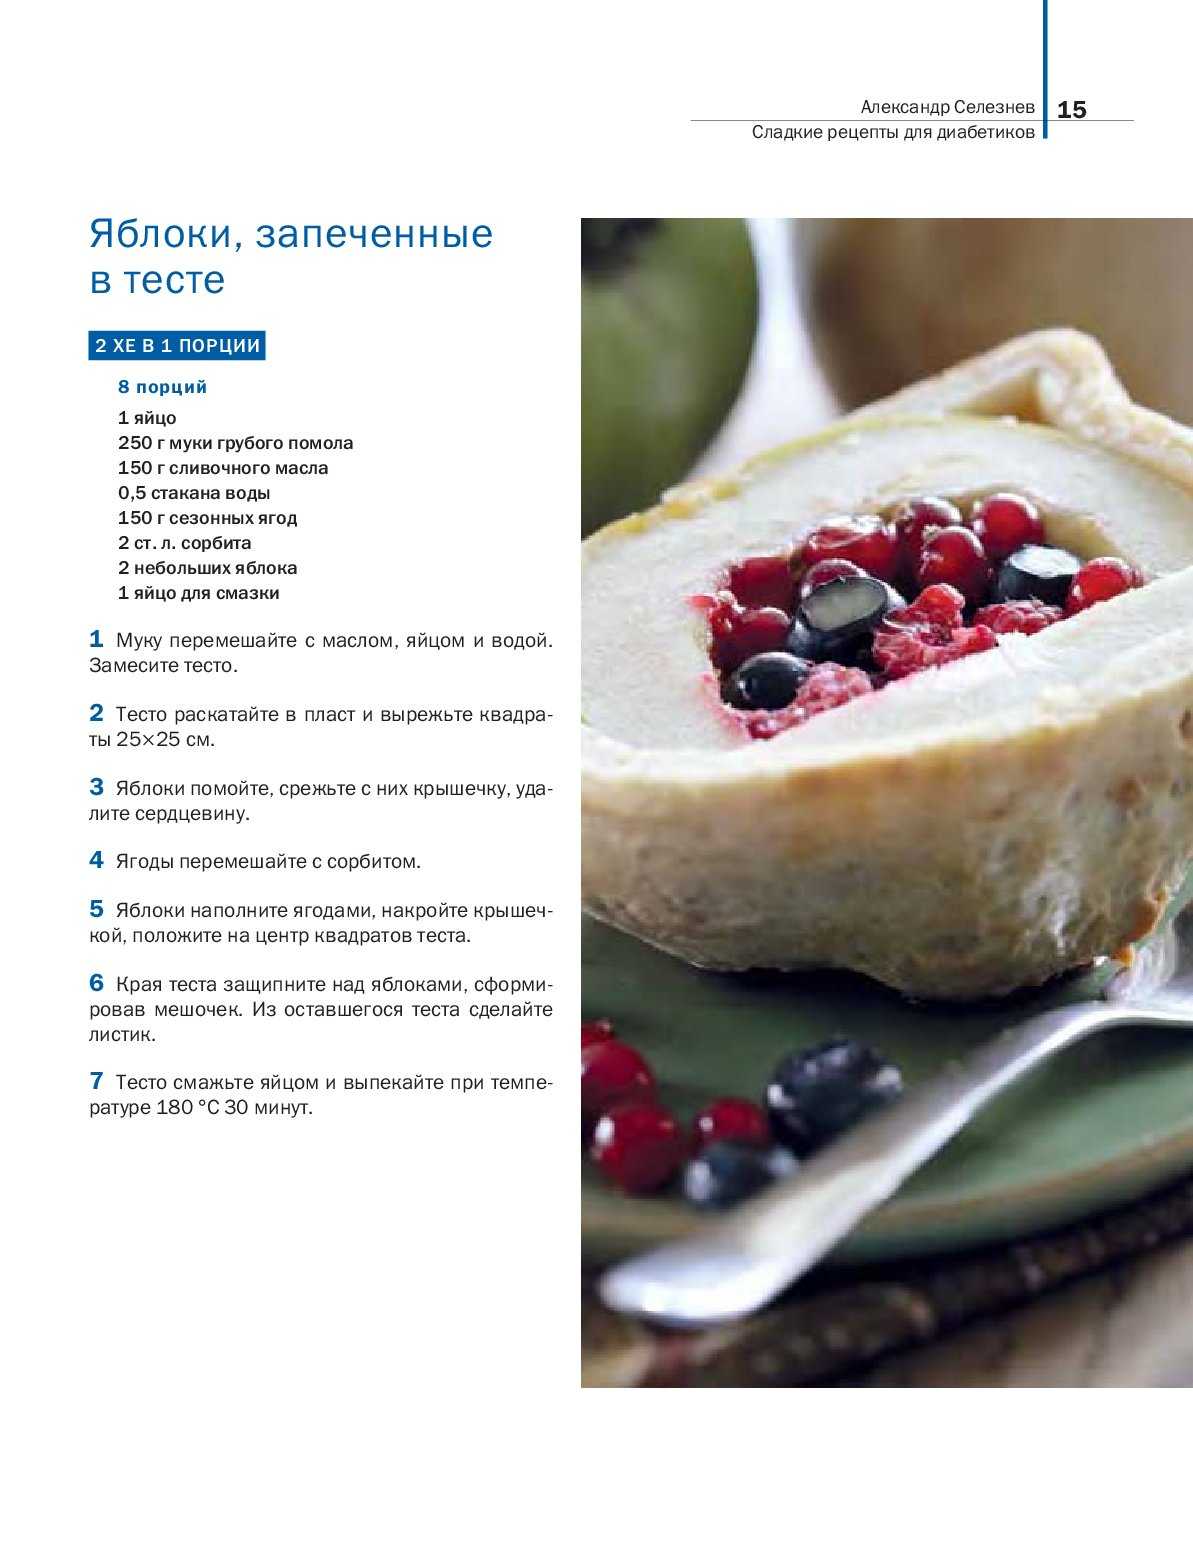 Десерт для диабетиков 2 типа: рецепты вкусняшек при диабете с фото | рецепты | diabetystop.com